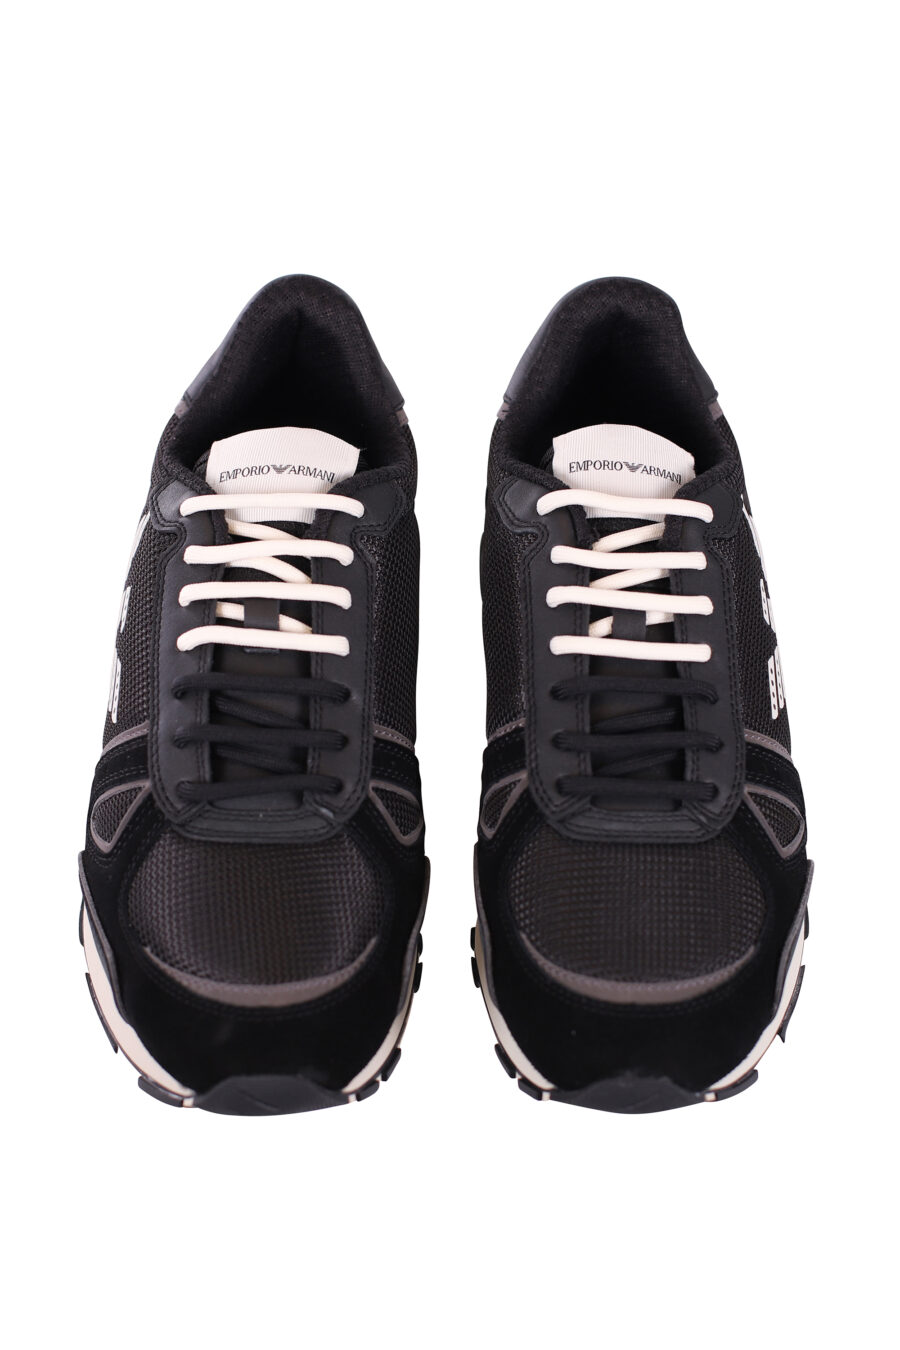 Zapatillas negras con maxilogo aguila blanco - IMG 5643